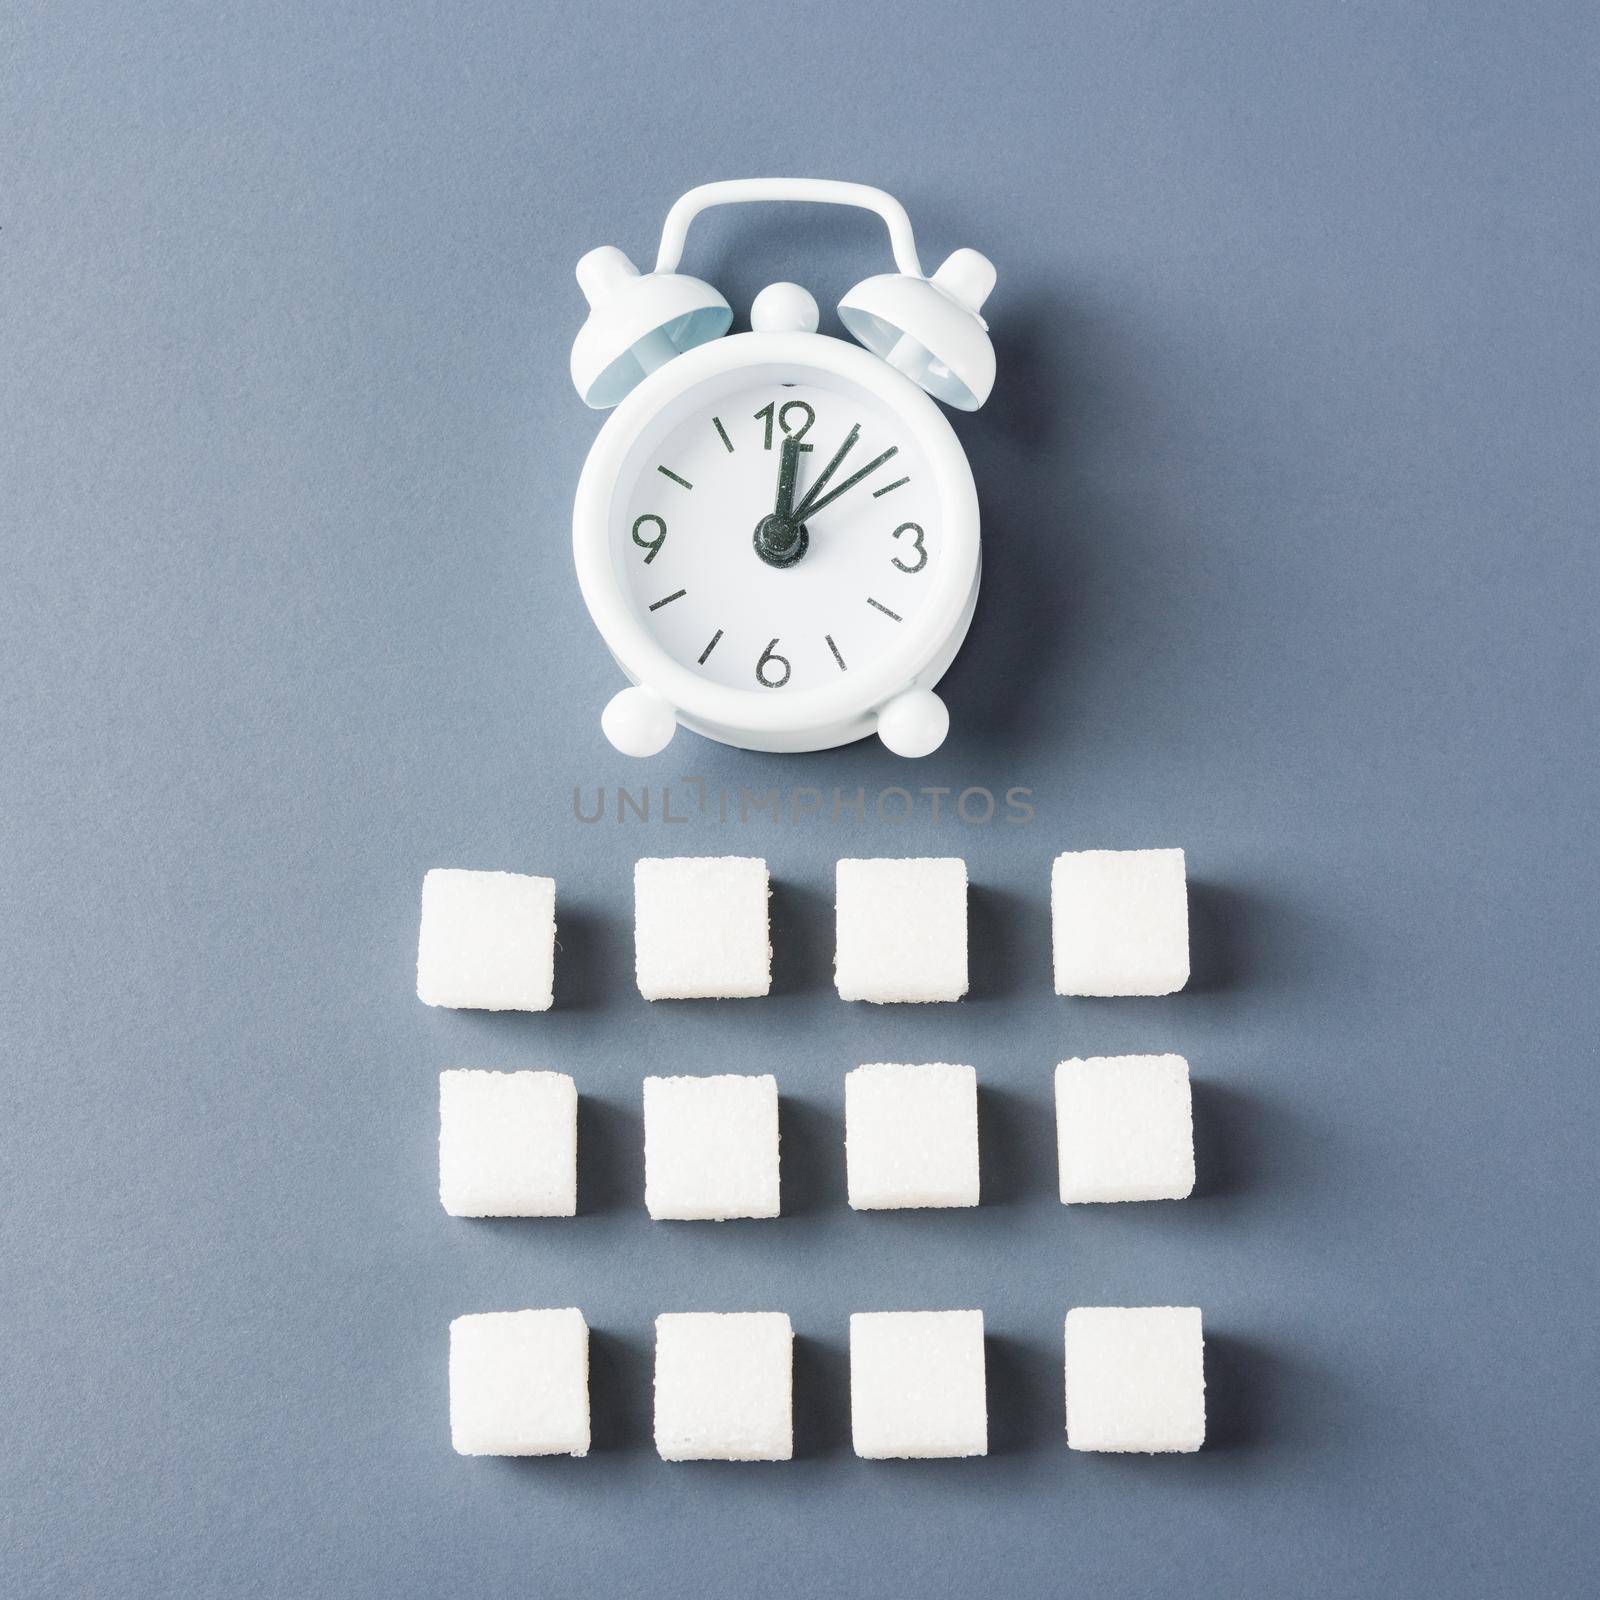 sugar cube sweet food ingredient geometry pattern and alarm clock by Sorapop